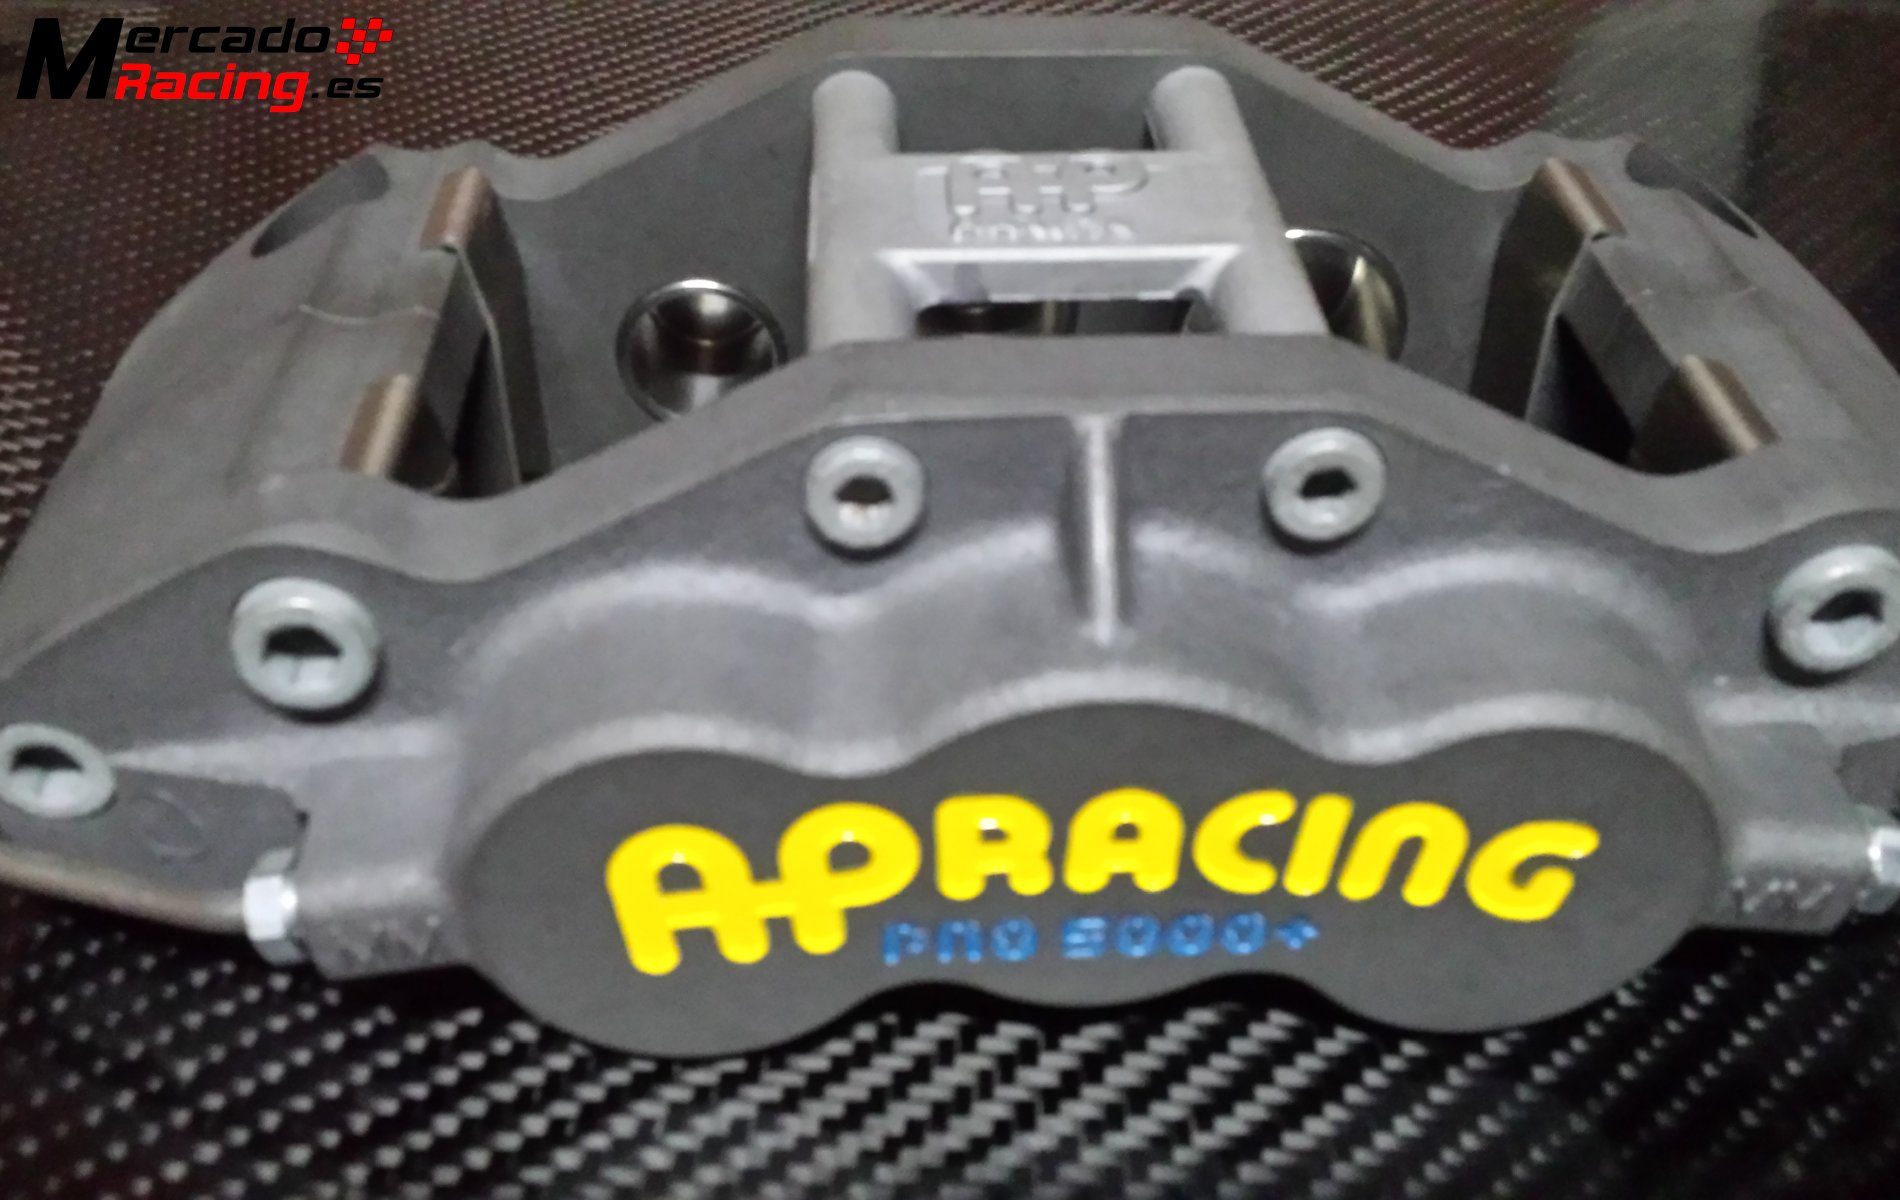 Ap racing 6 pistones nuevas